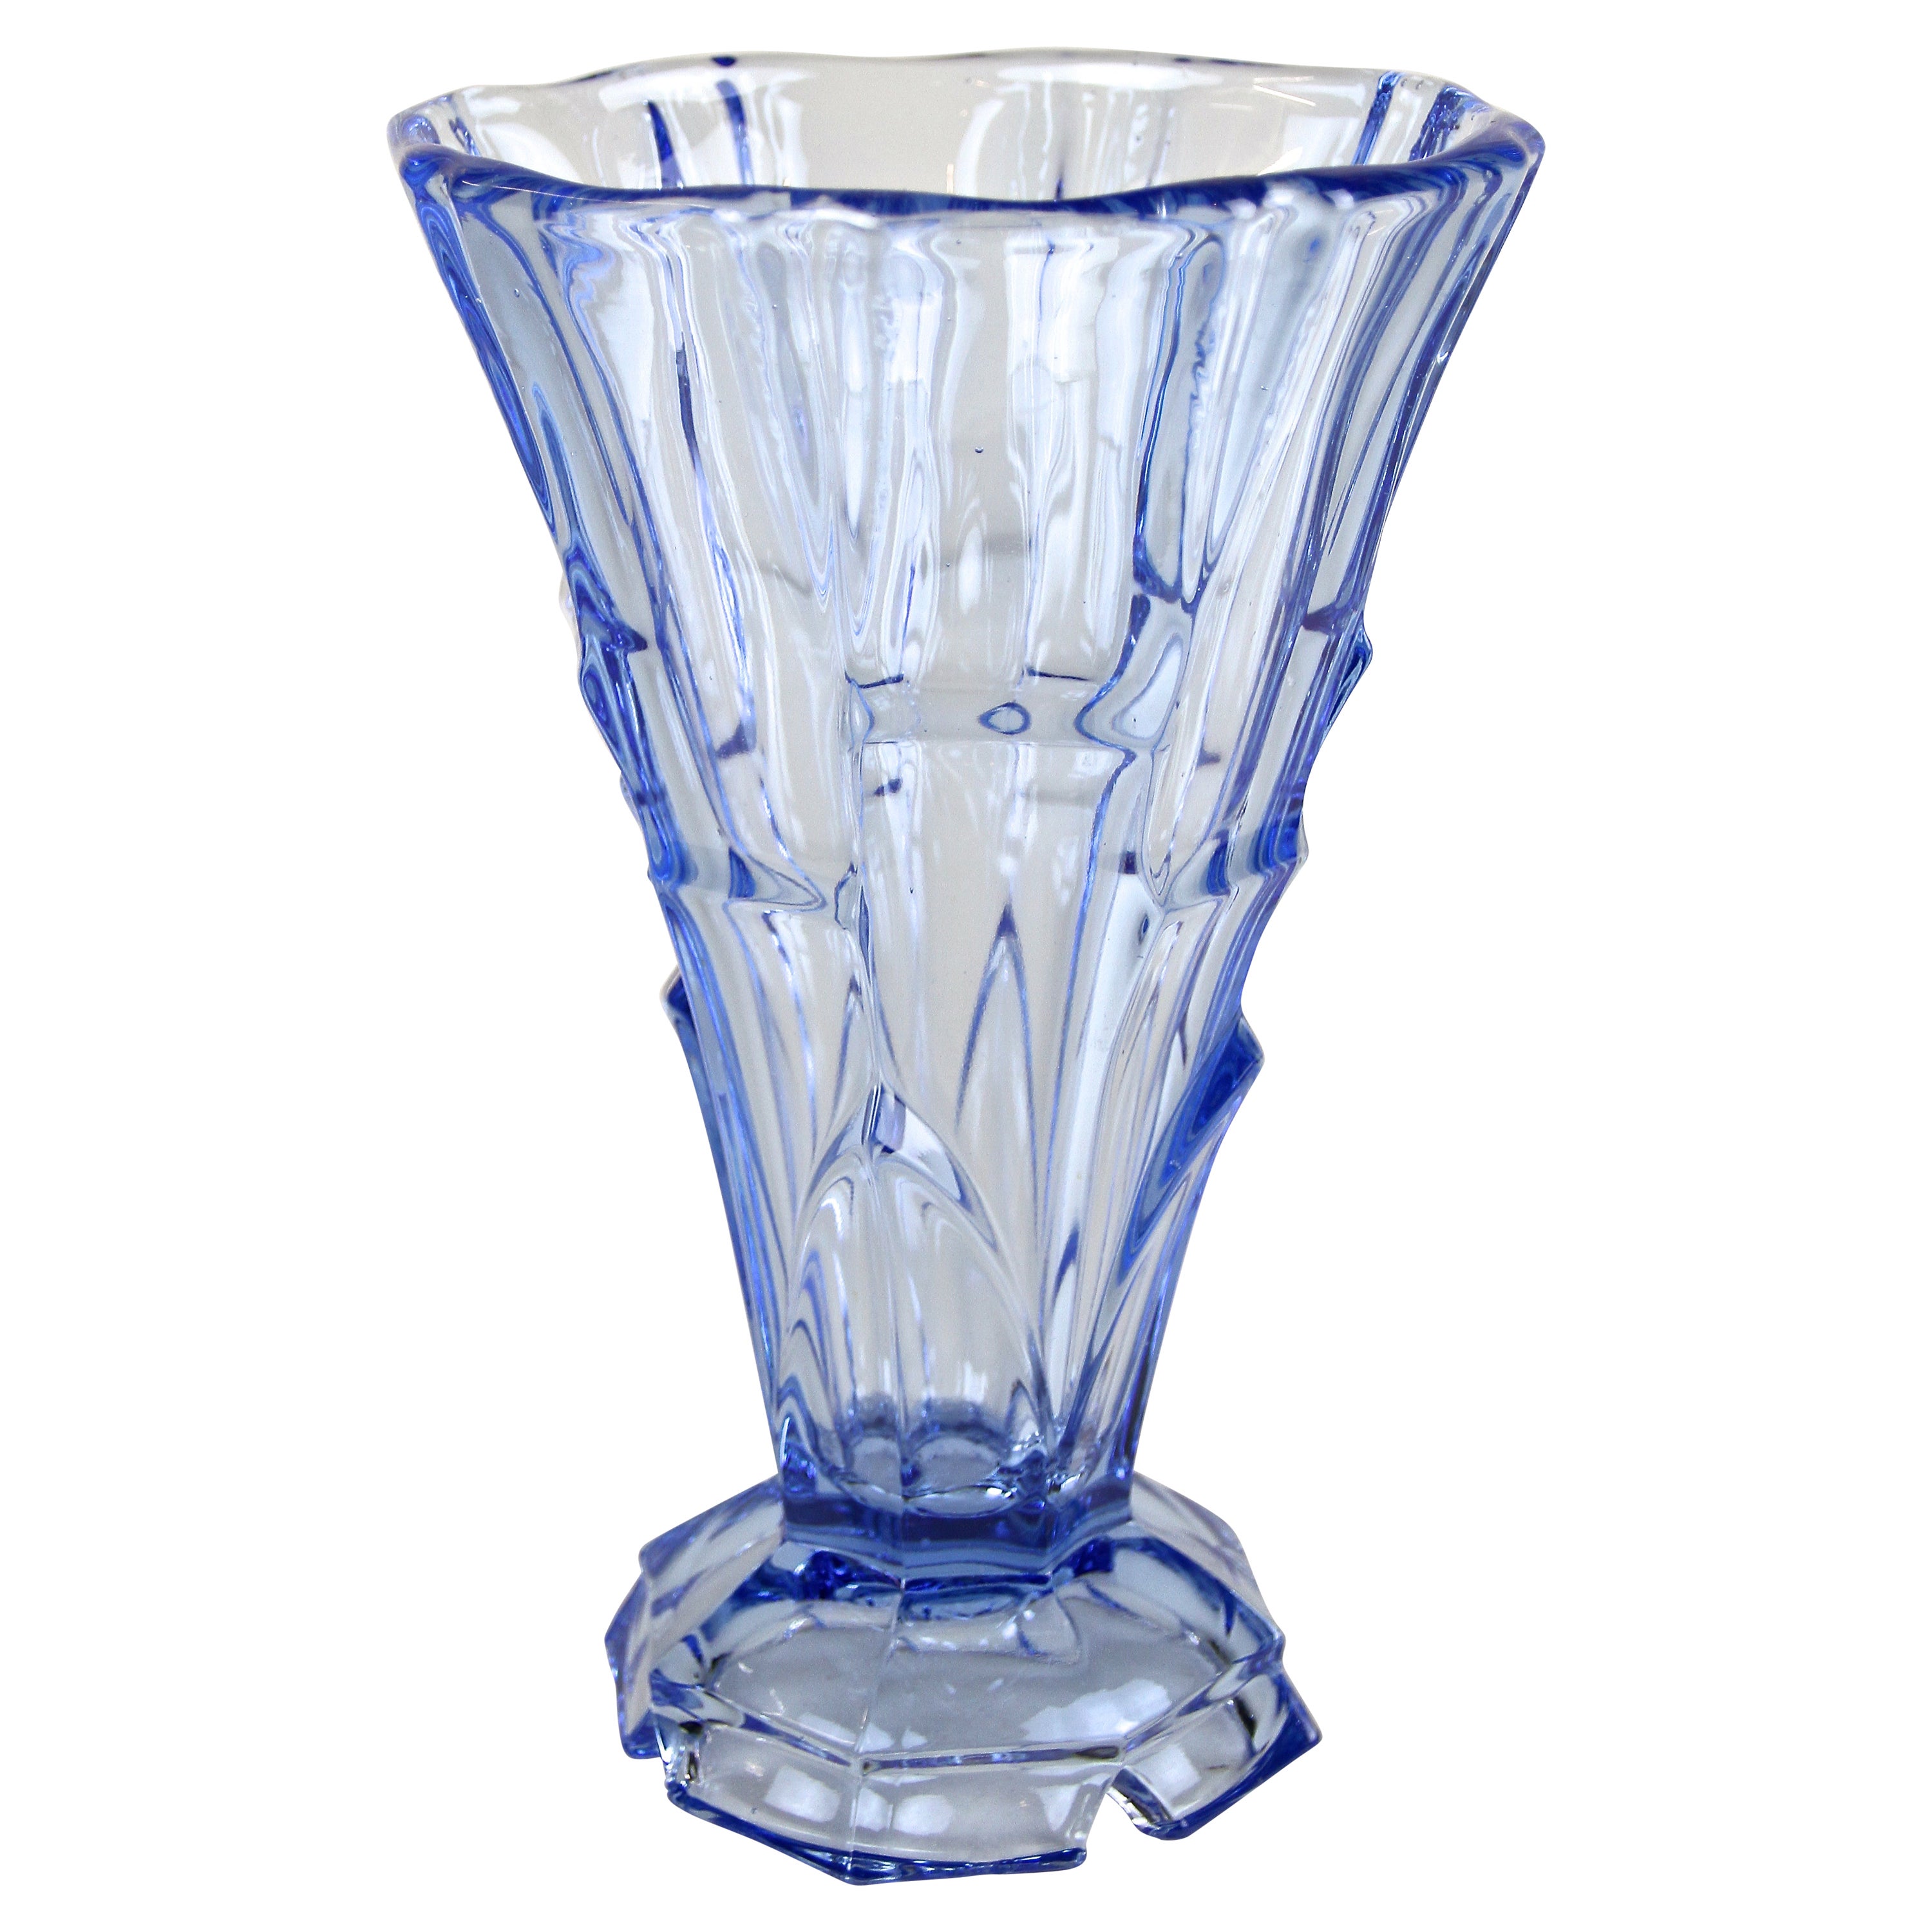 Vase glas grün - Der Favorit unserer Produkttester